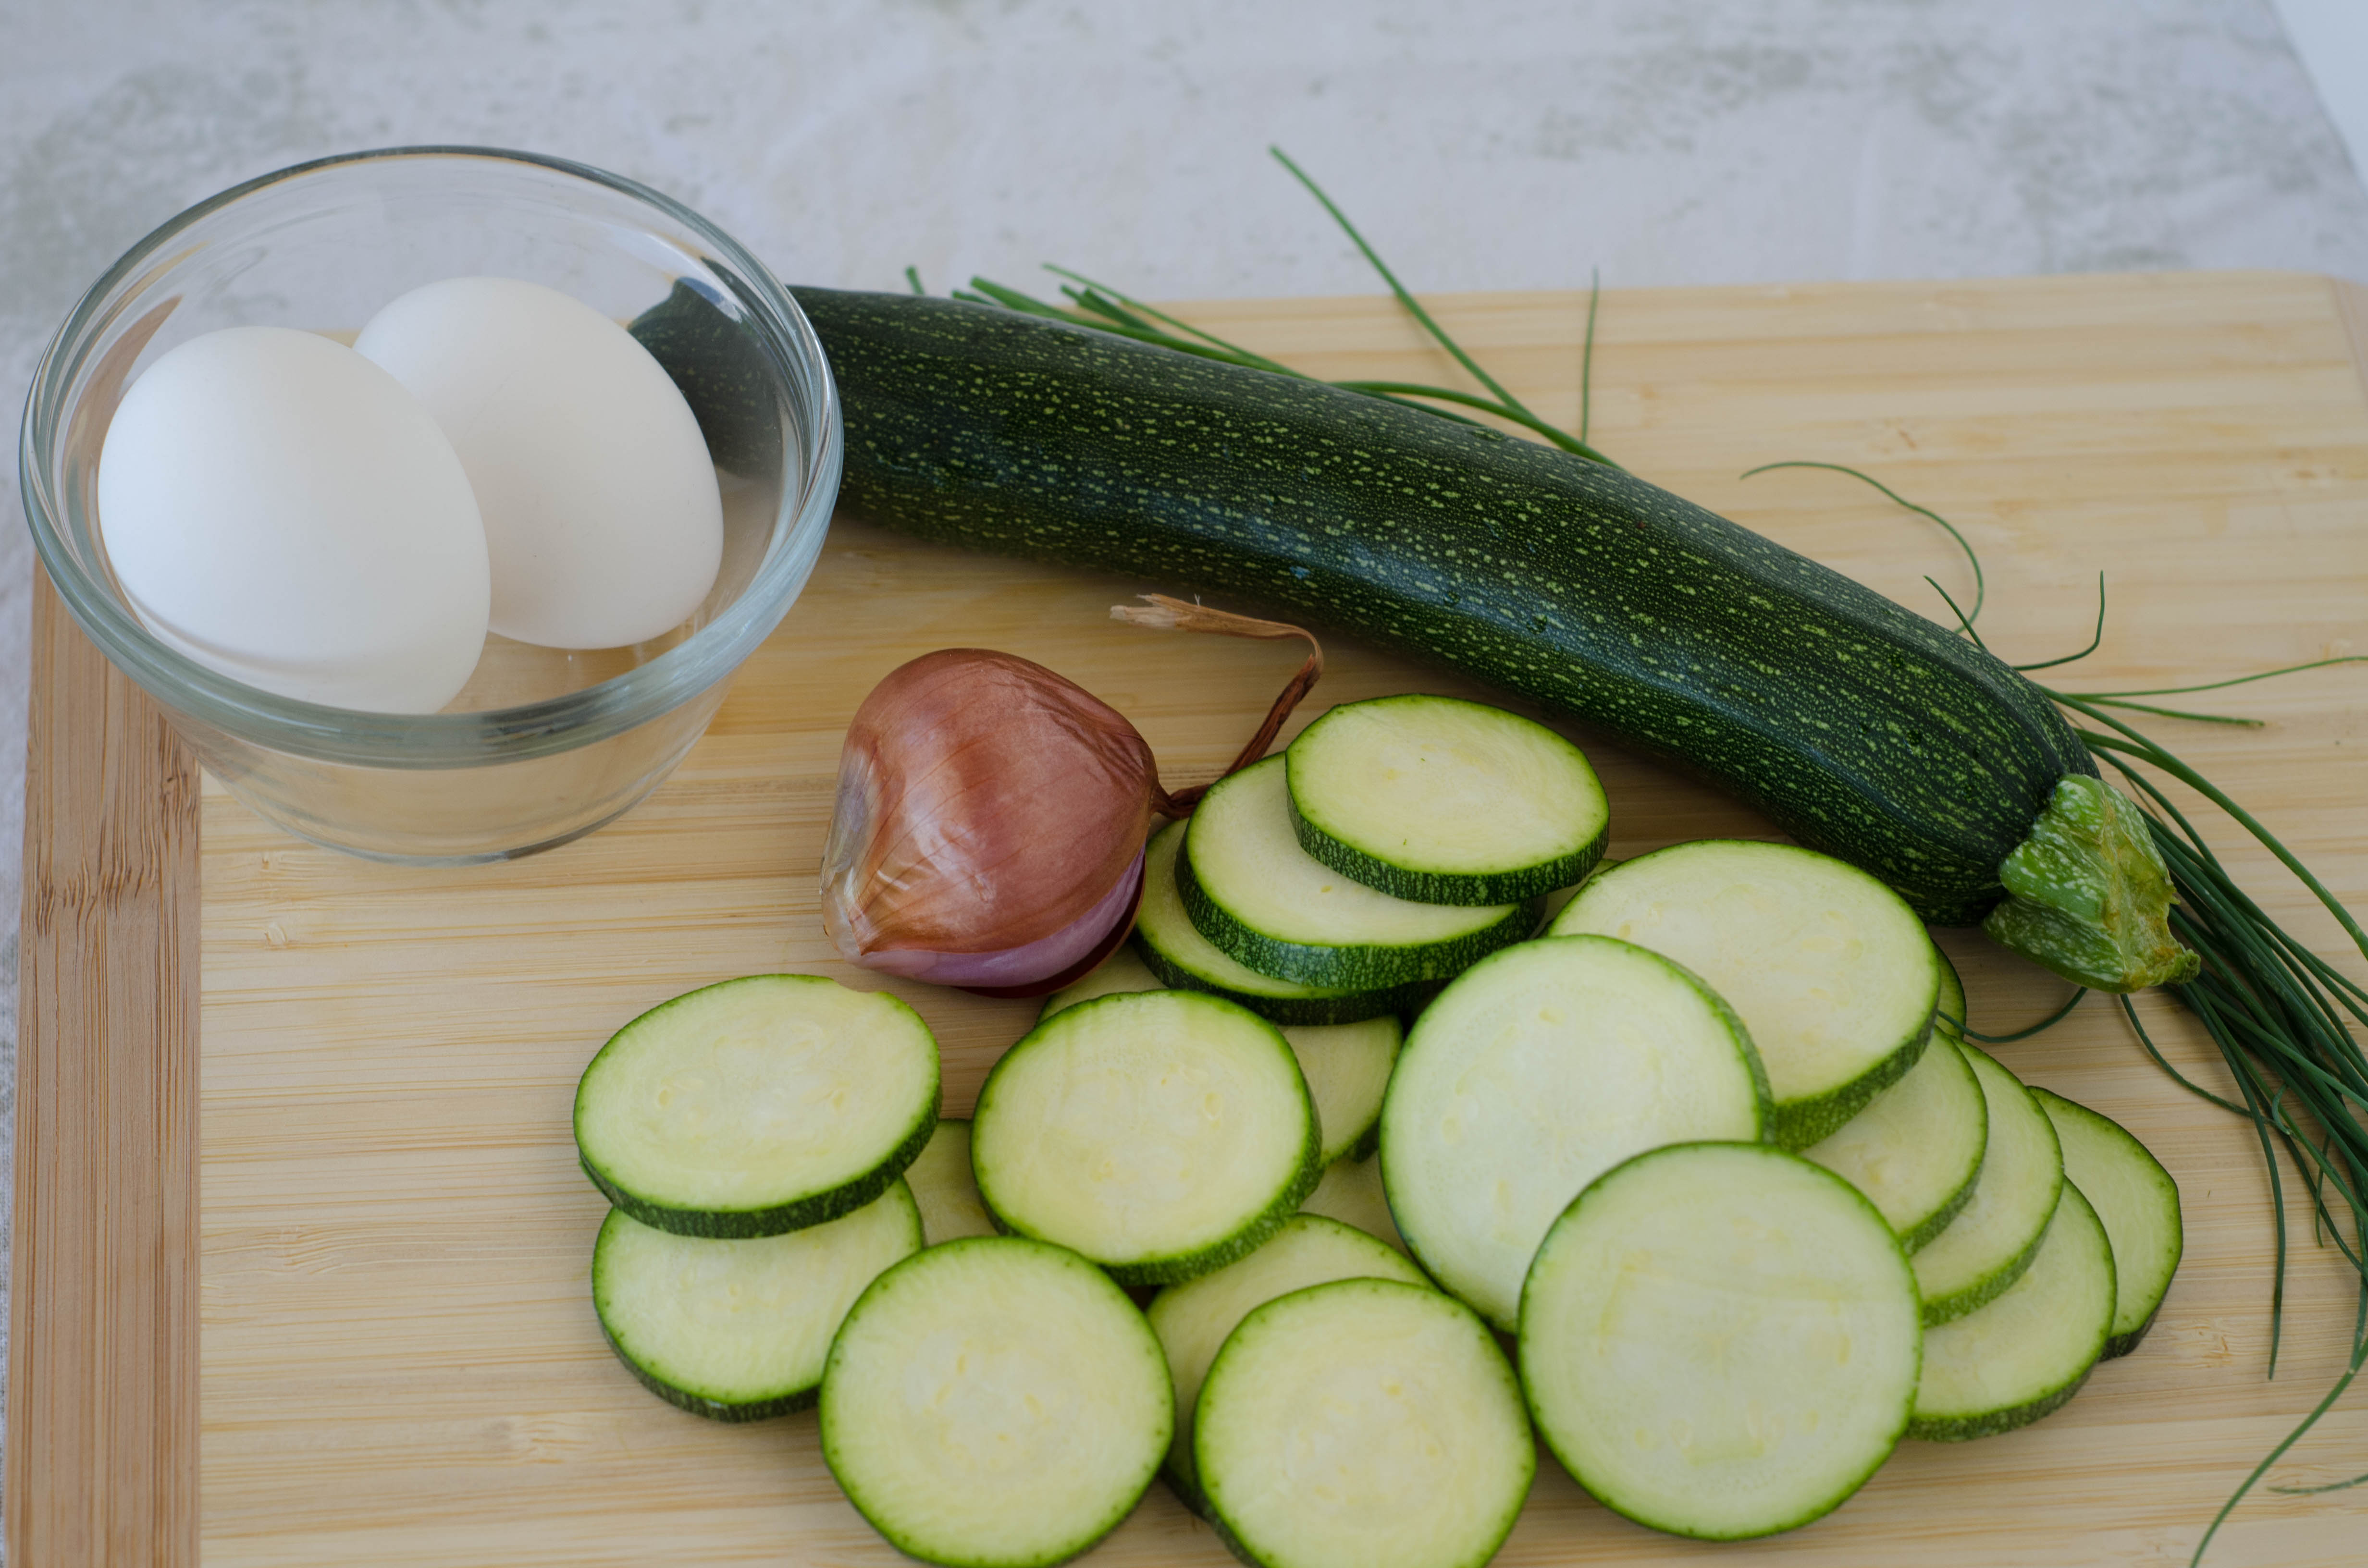 zucchini pie ingredients